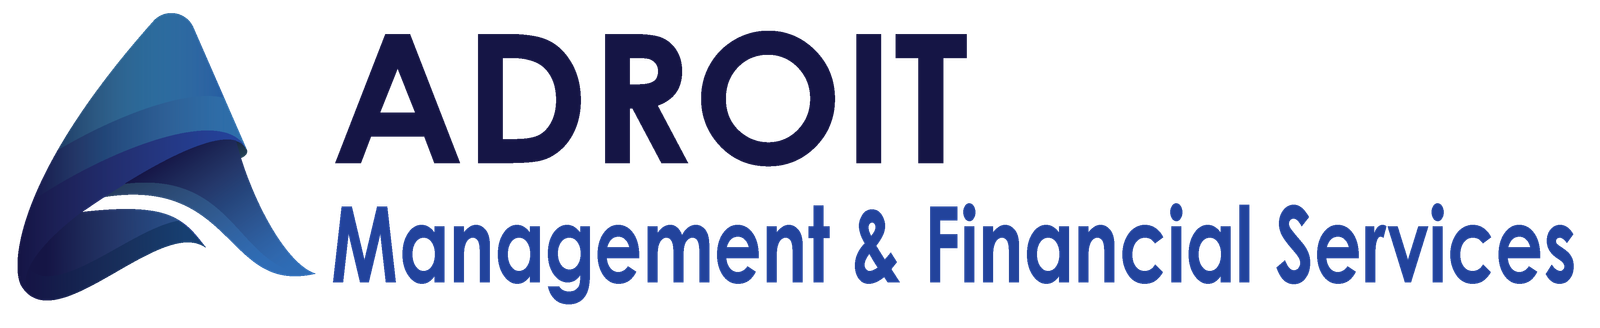 ADROIT Management & Financial Services